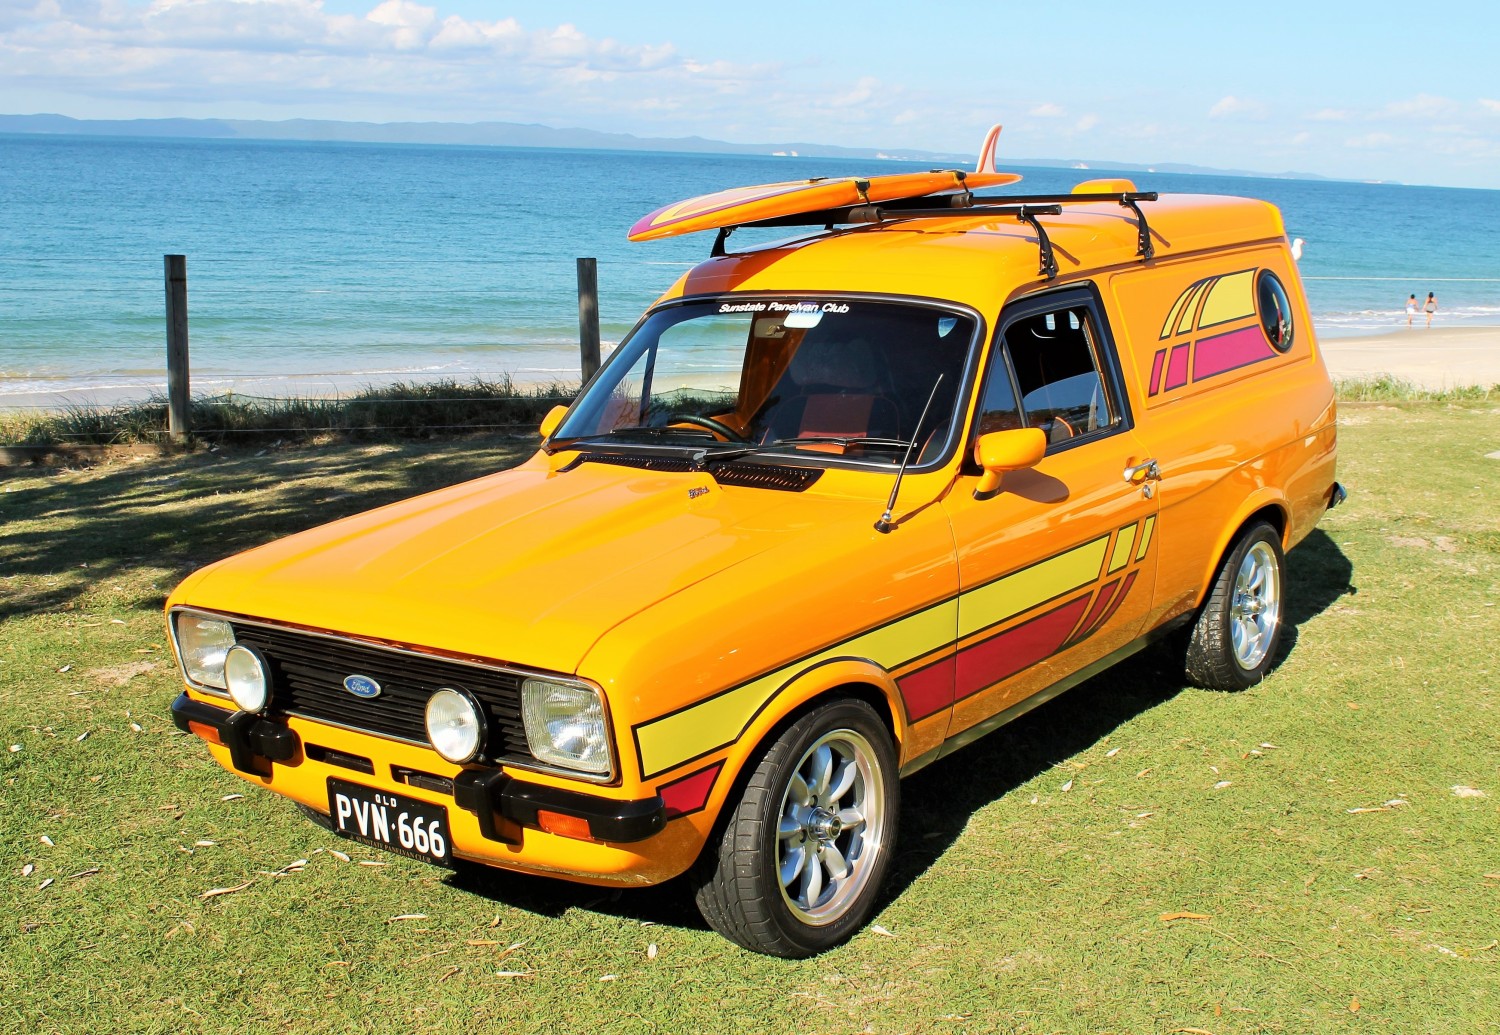 sundowner panel van for sale